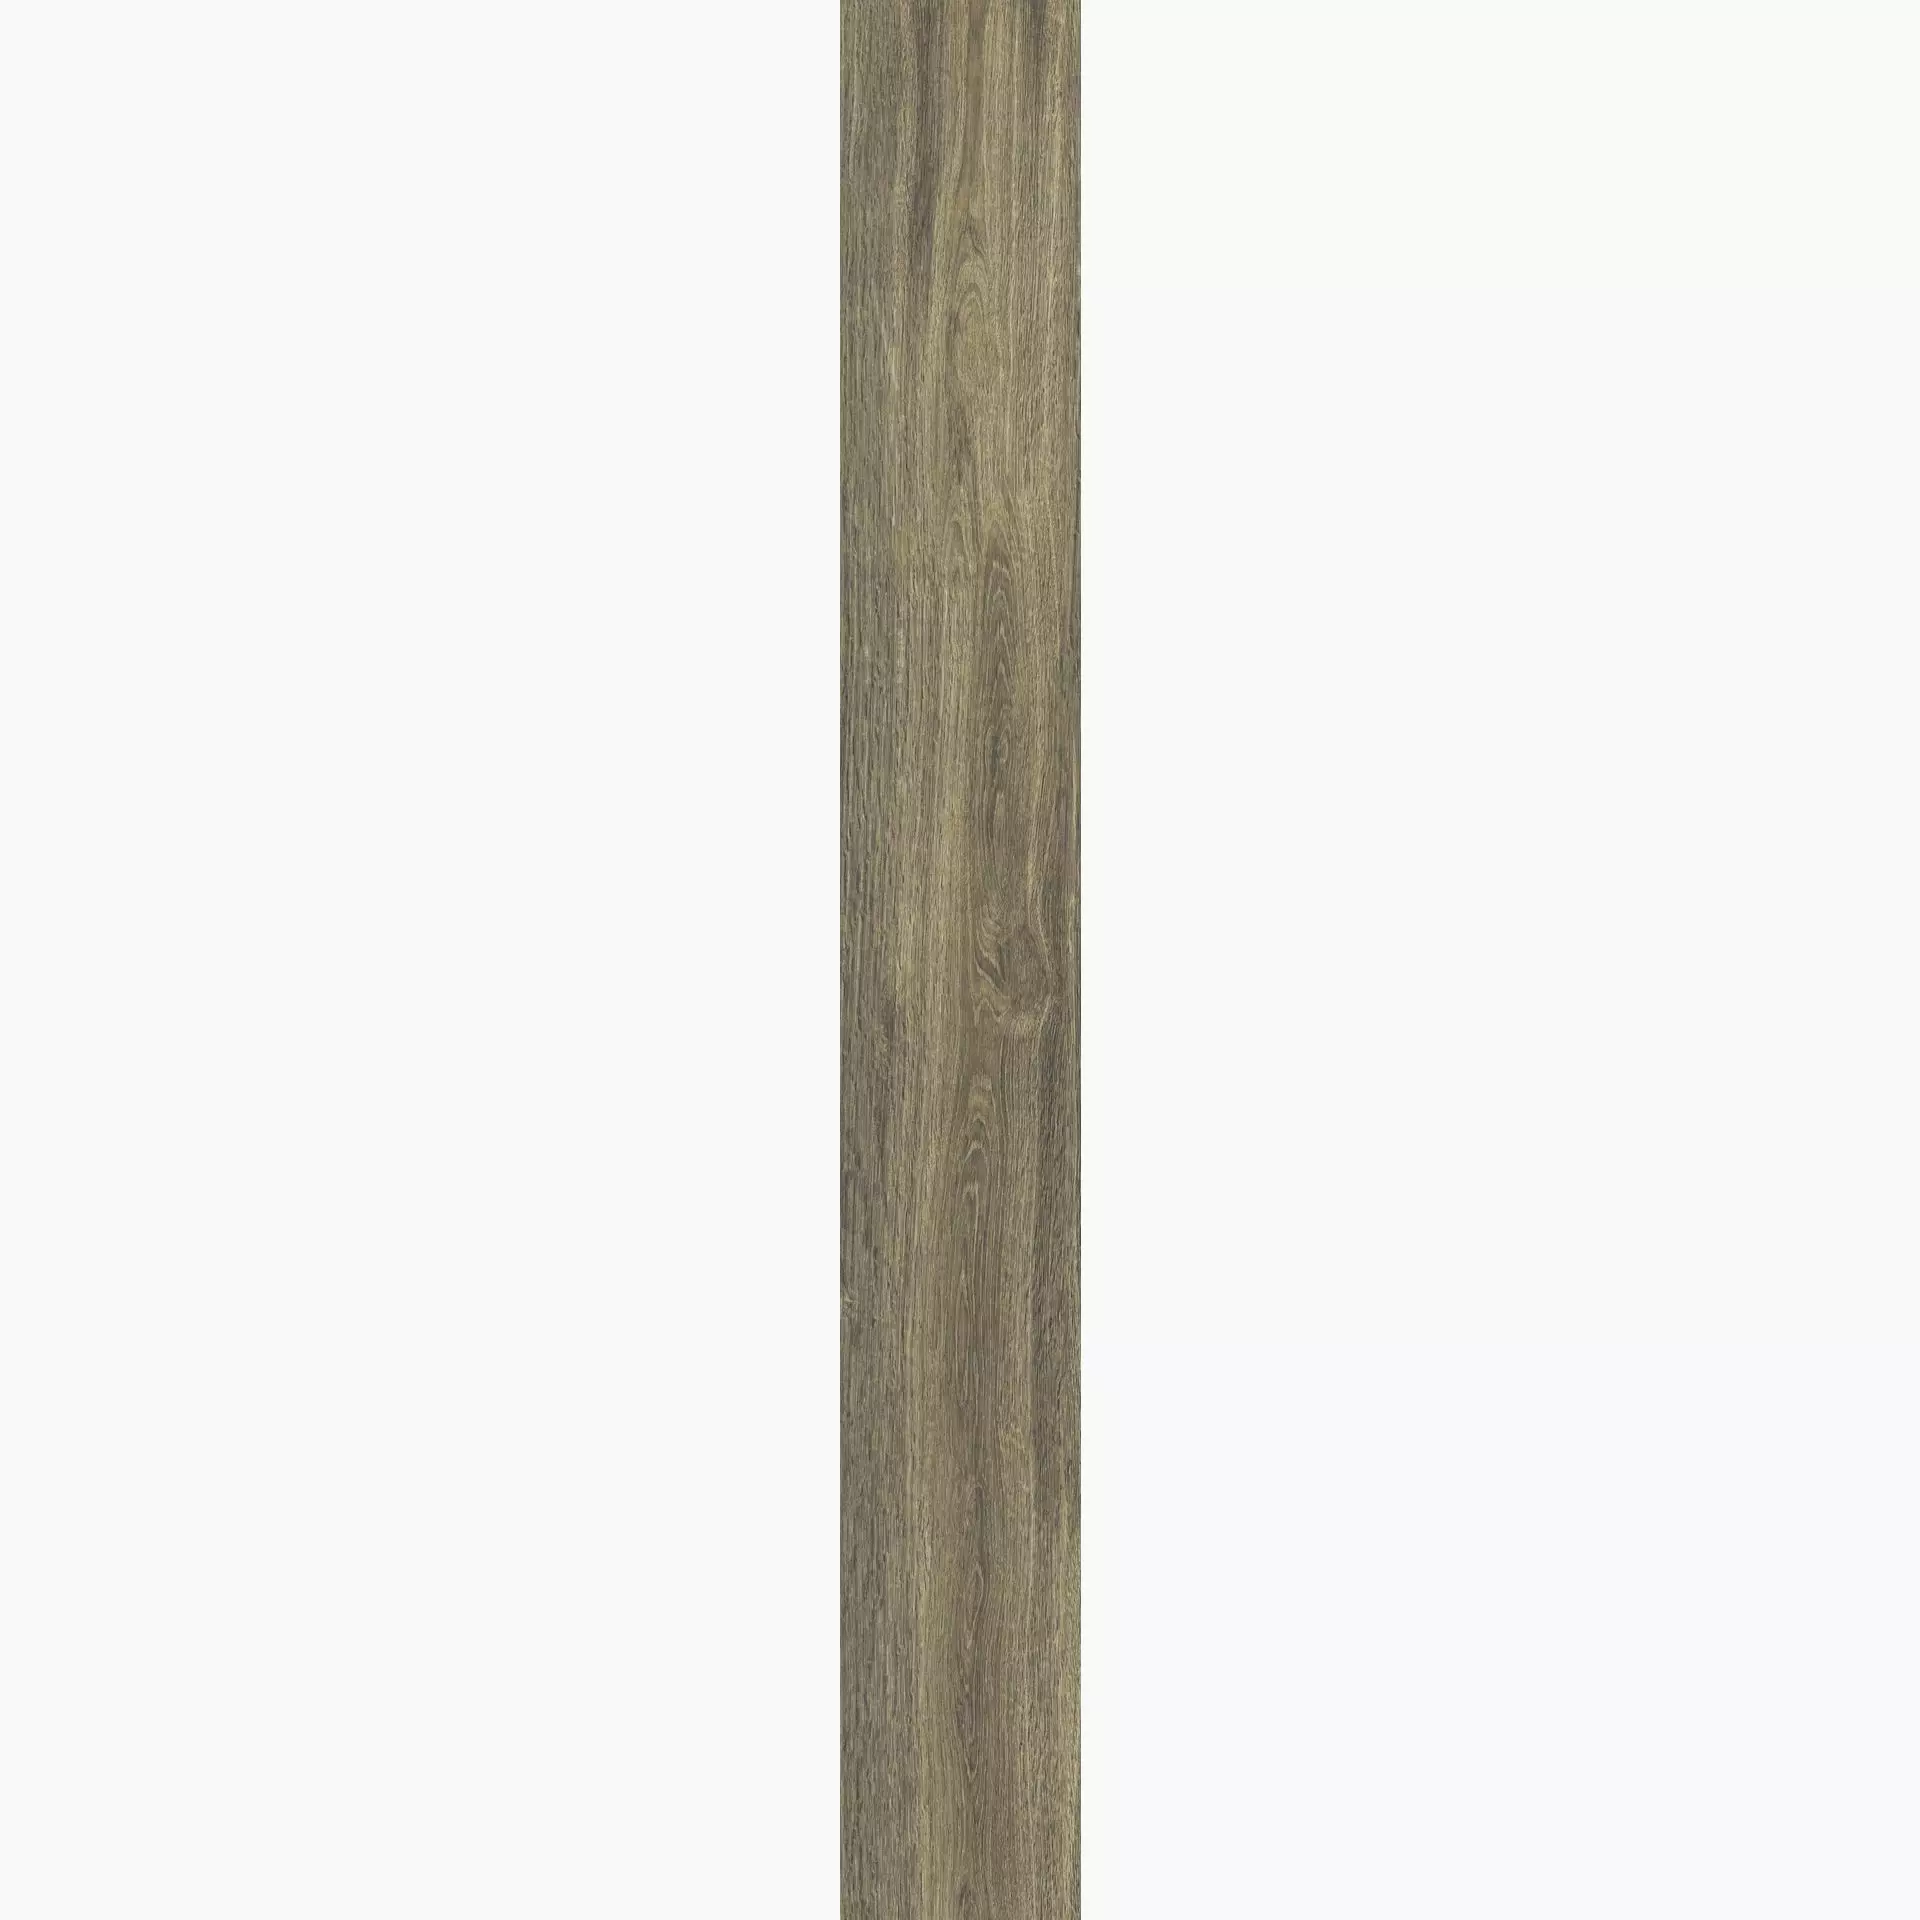 Casalgrande Planks Muschio Naturale – Matt 10930085 30x240cm rectified 6mm